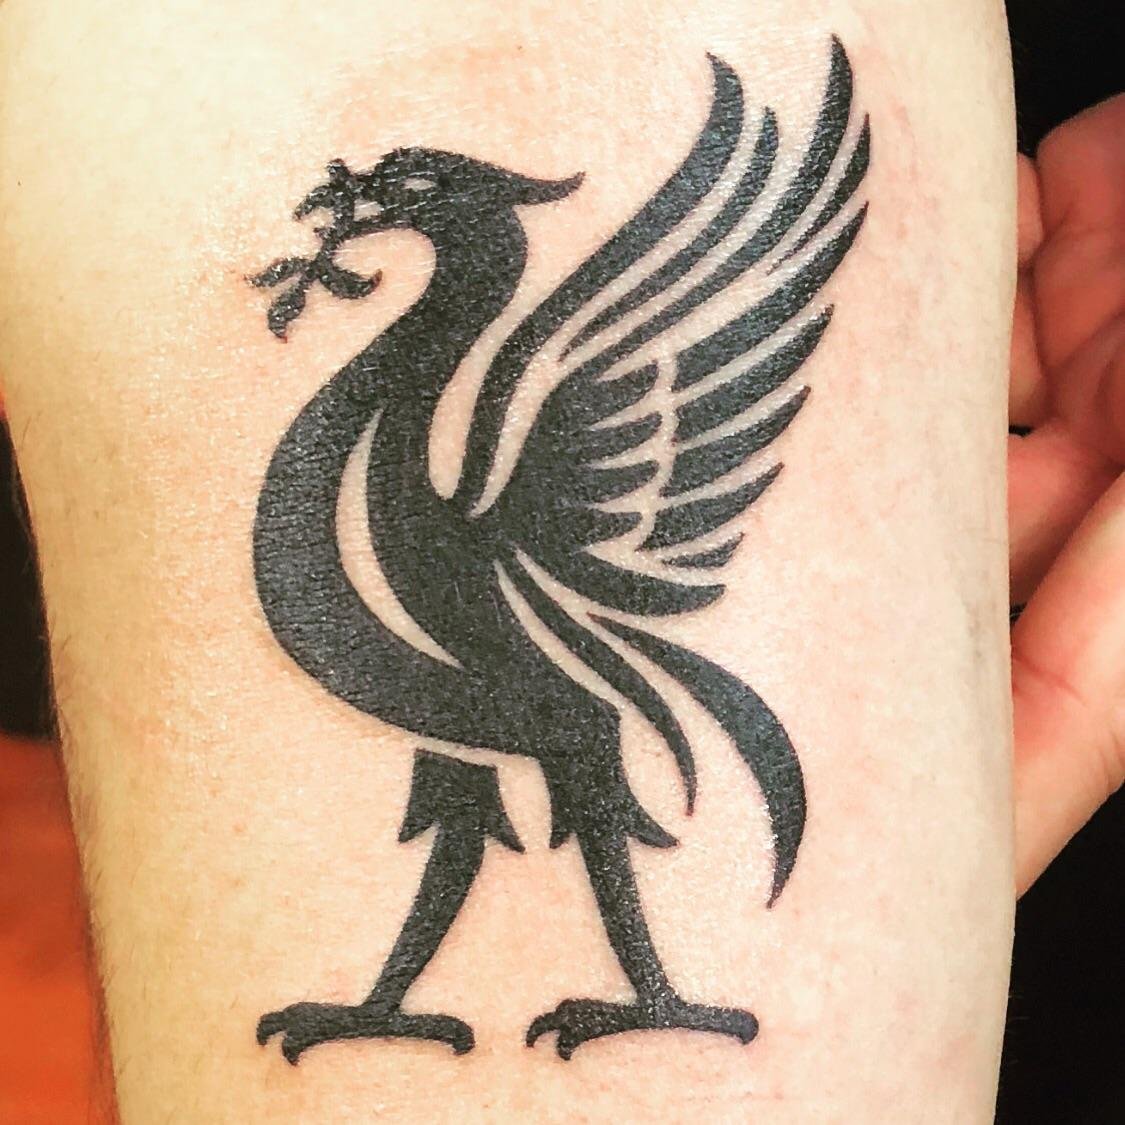 Liverpool FC tattoos